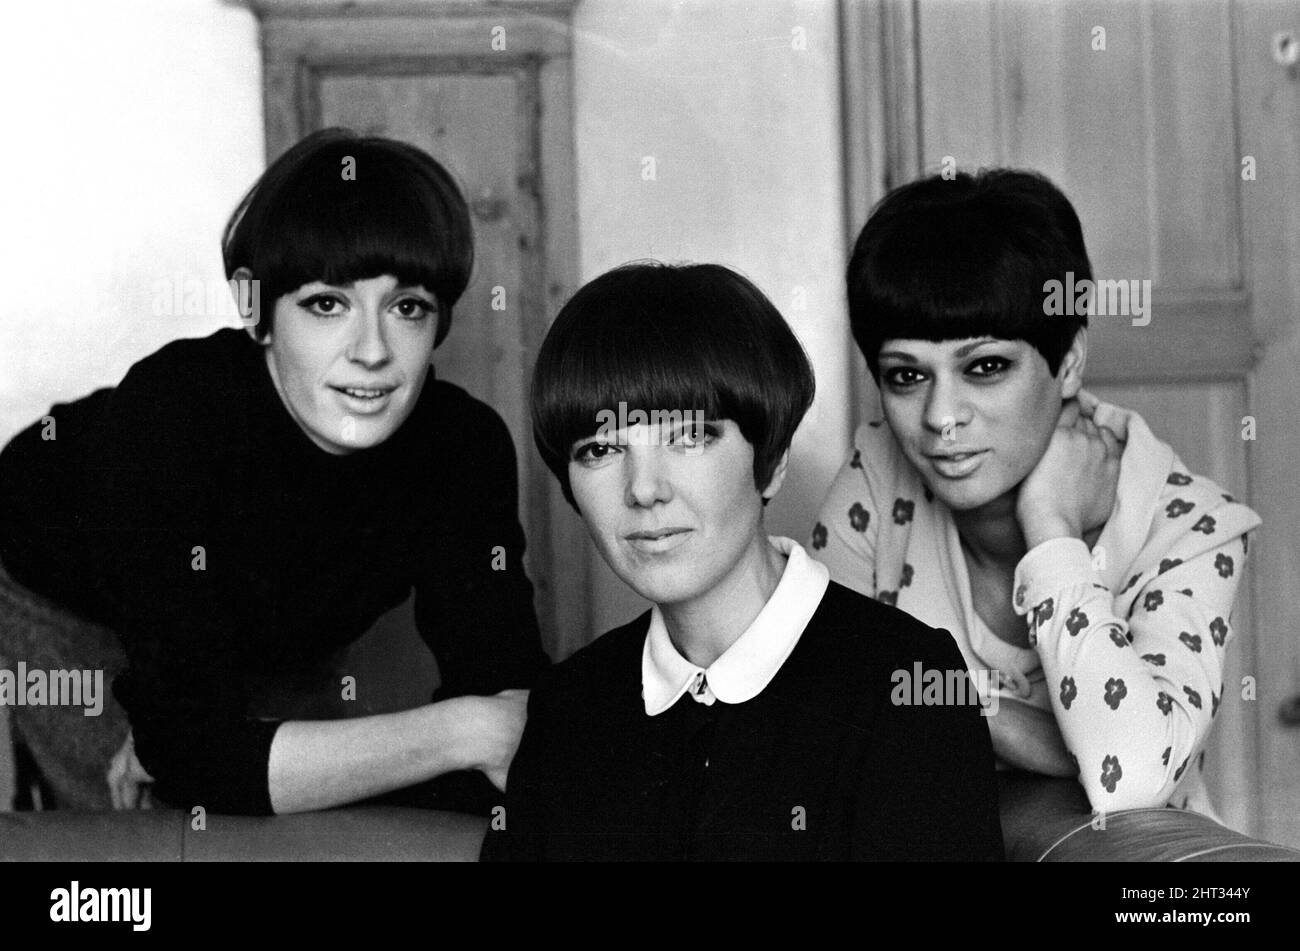 Susan Gellard (à gauche) Mary Quant (au centre) Jan de Souza (à droite) avec leurs coiffures de Vidal Sassoon. La coiffure de Vidal Sassoon est très populaire au milieu de 1960s. Photo prise le 2nd mars 1965 Banque D'Images